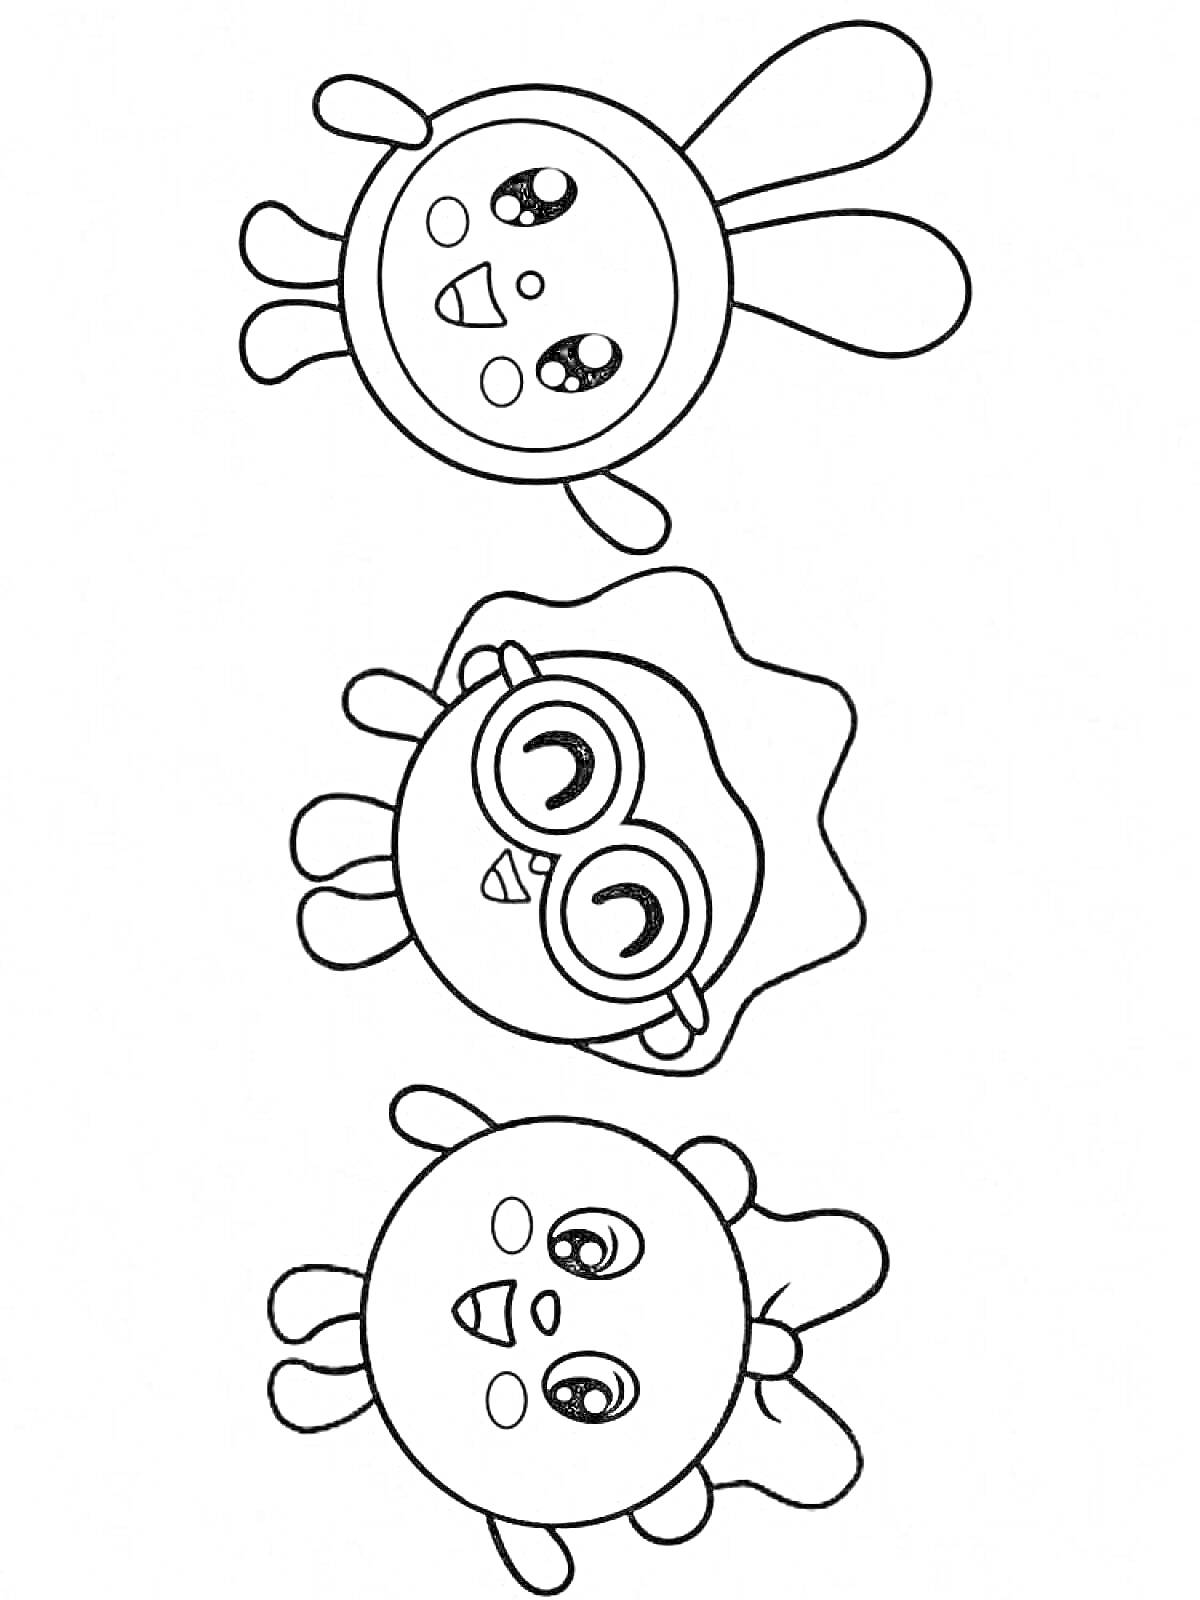 Раскраска Три персонажа: Кролик с большими ушами и улыбкой наверху, персонаж с очками посередине, персонаж с бантиком внизу